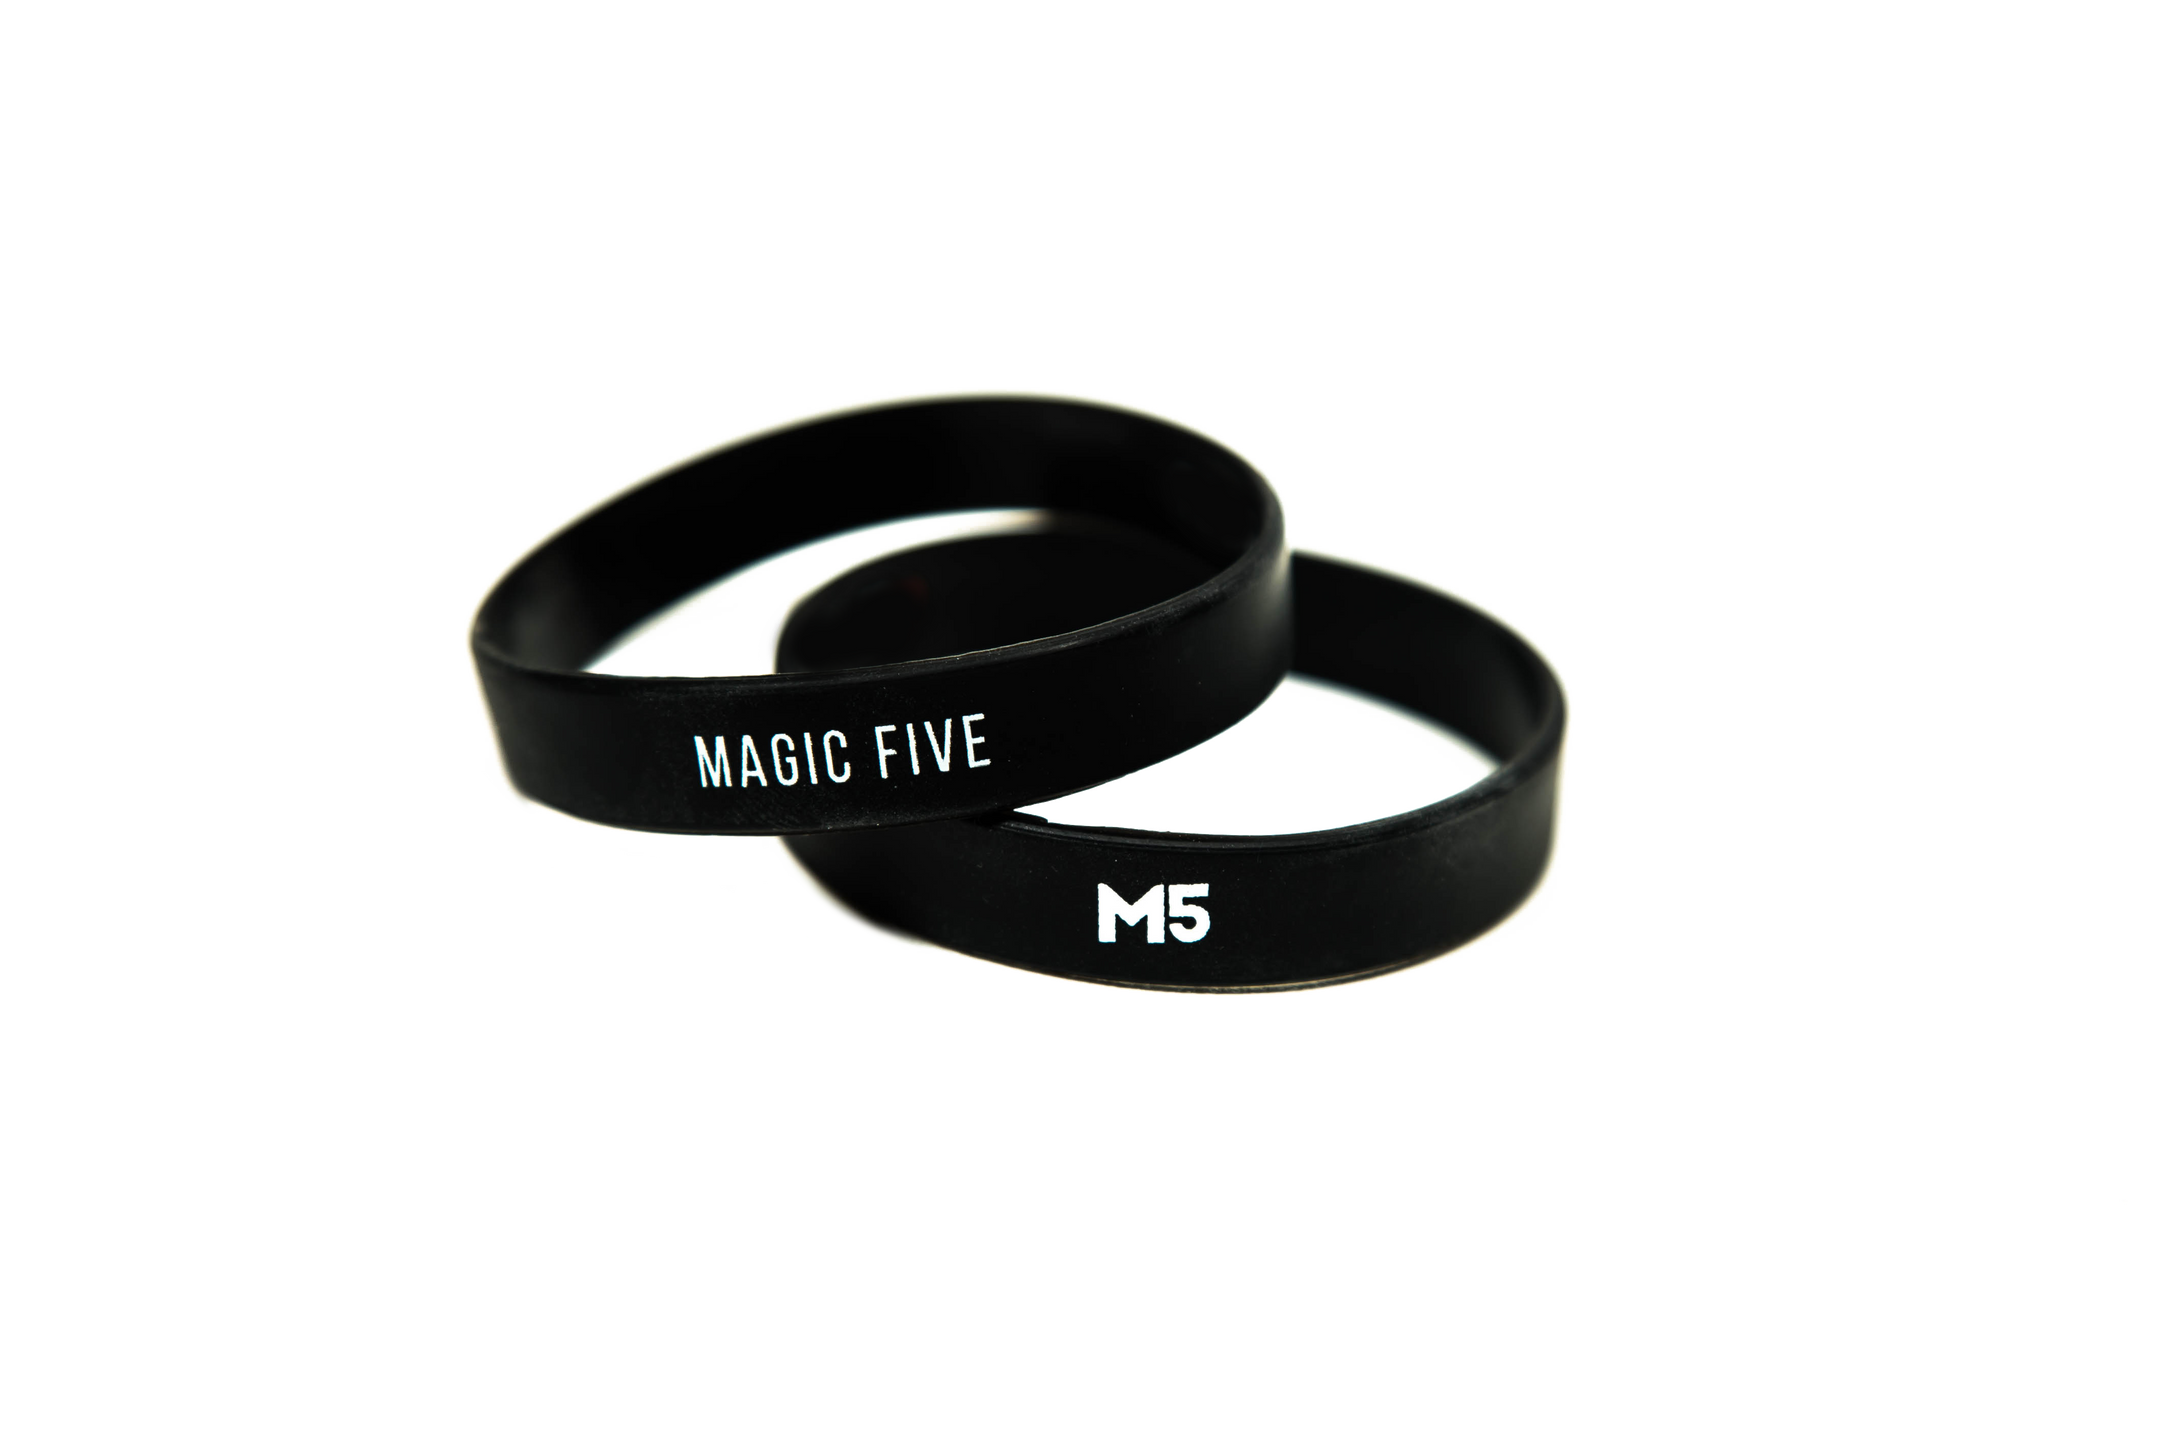 М magic. Мэджик 5. Кольцо Мэджик Файв. M5 Мэджик Файв. M5 Magic Five браслет.